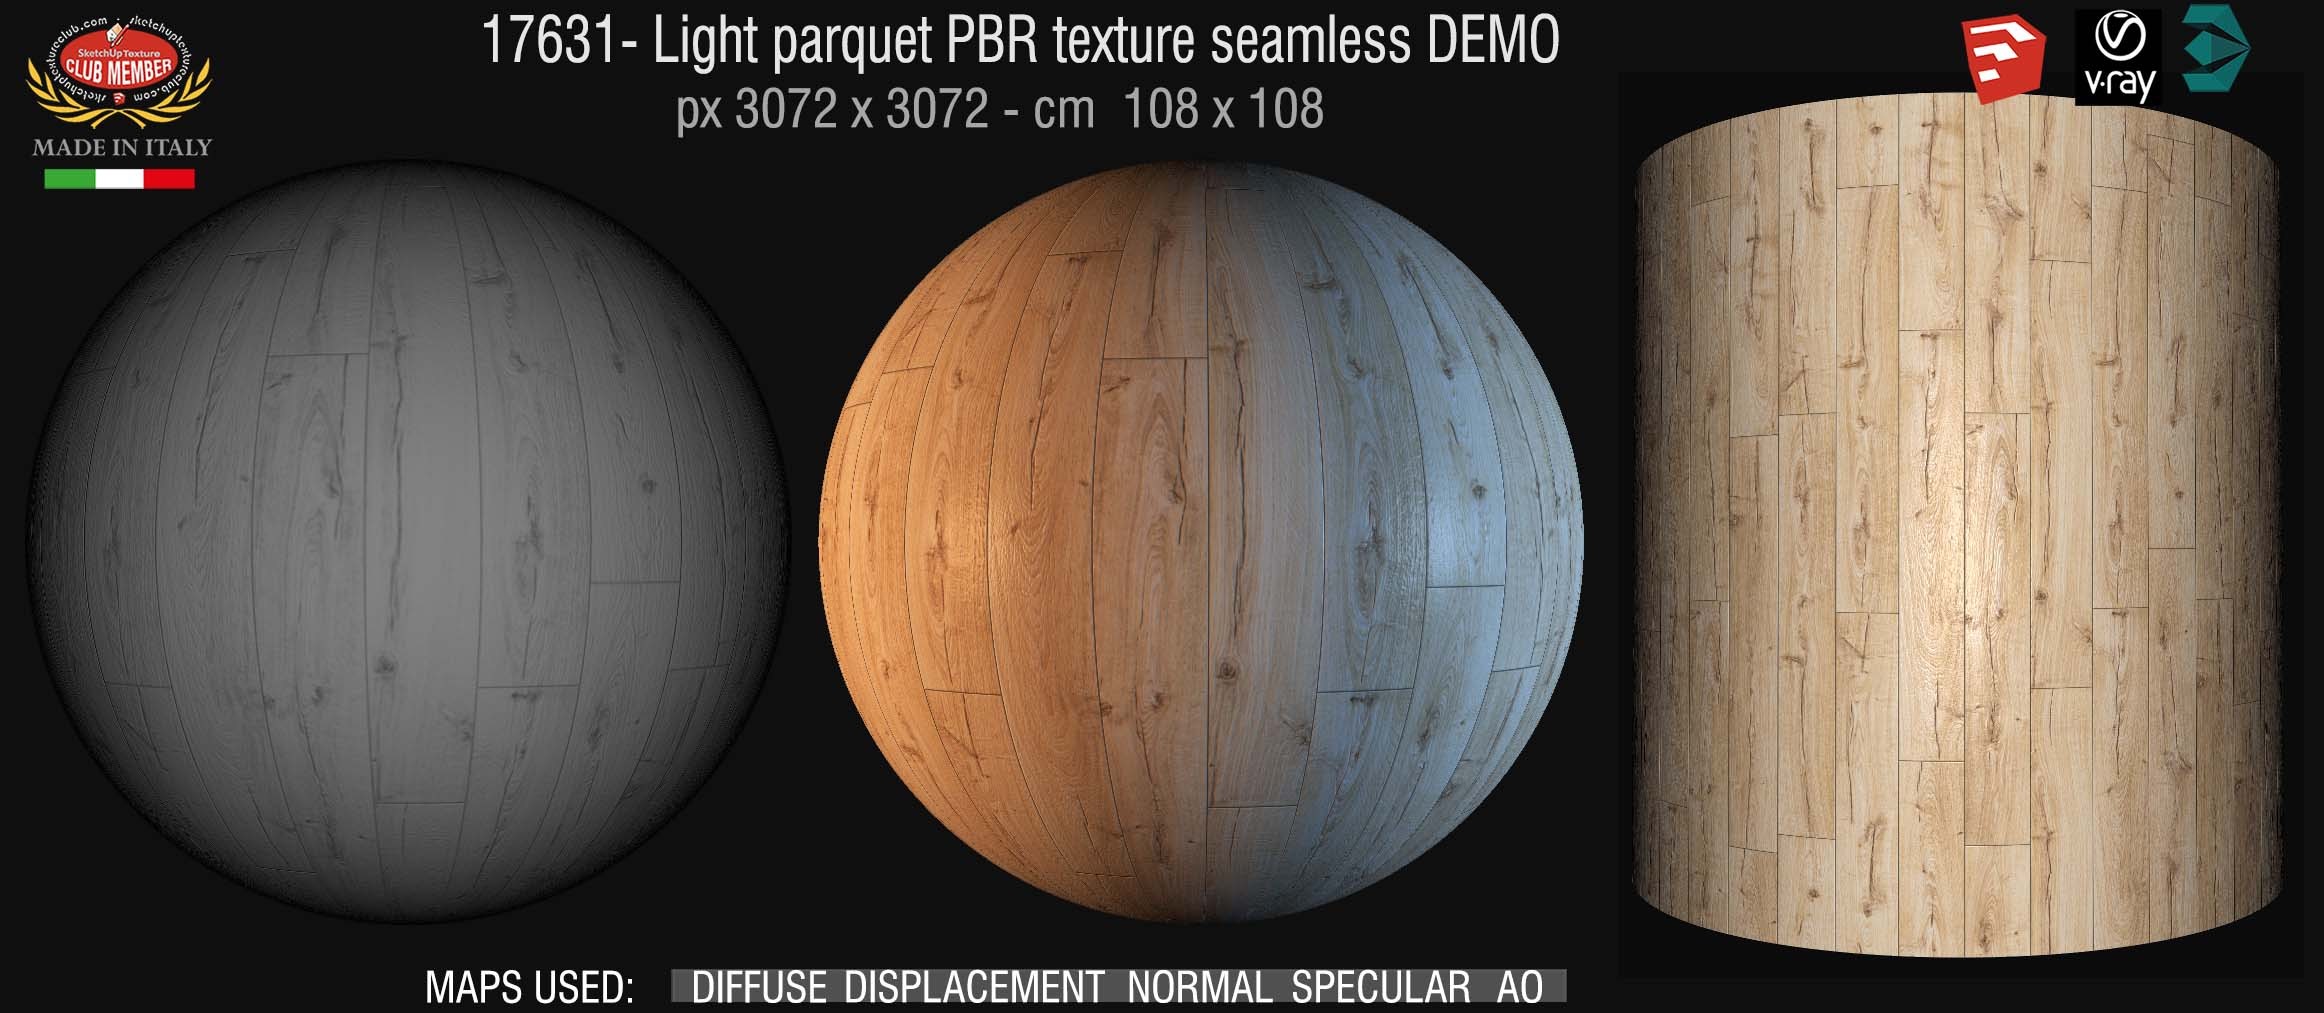 17631 Light parquet PBR texture seamless DEMO